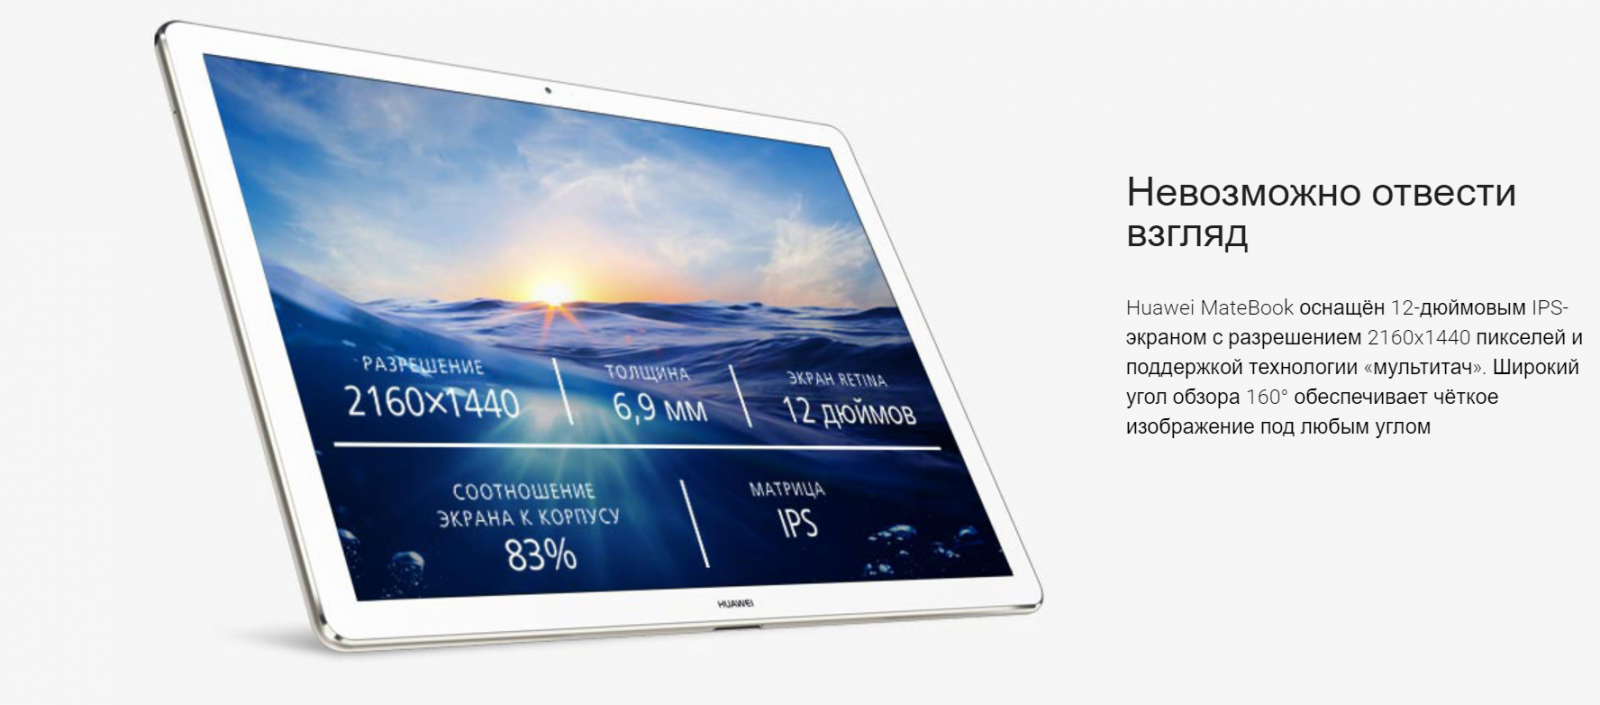 купить Планшет Huawei MateBook в минске